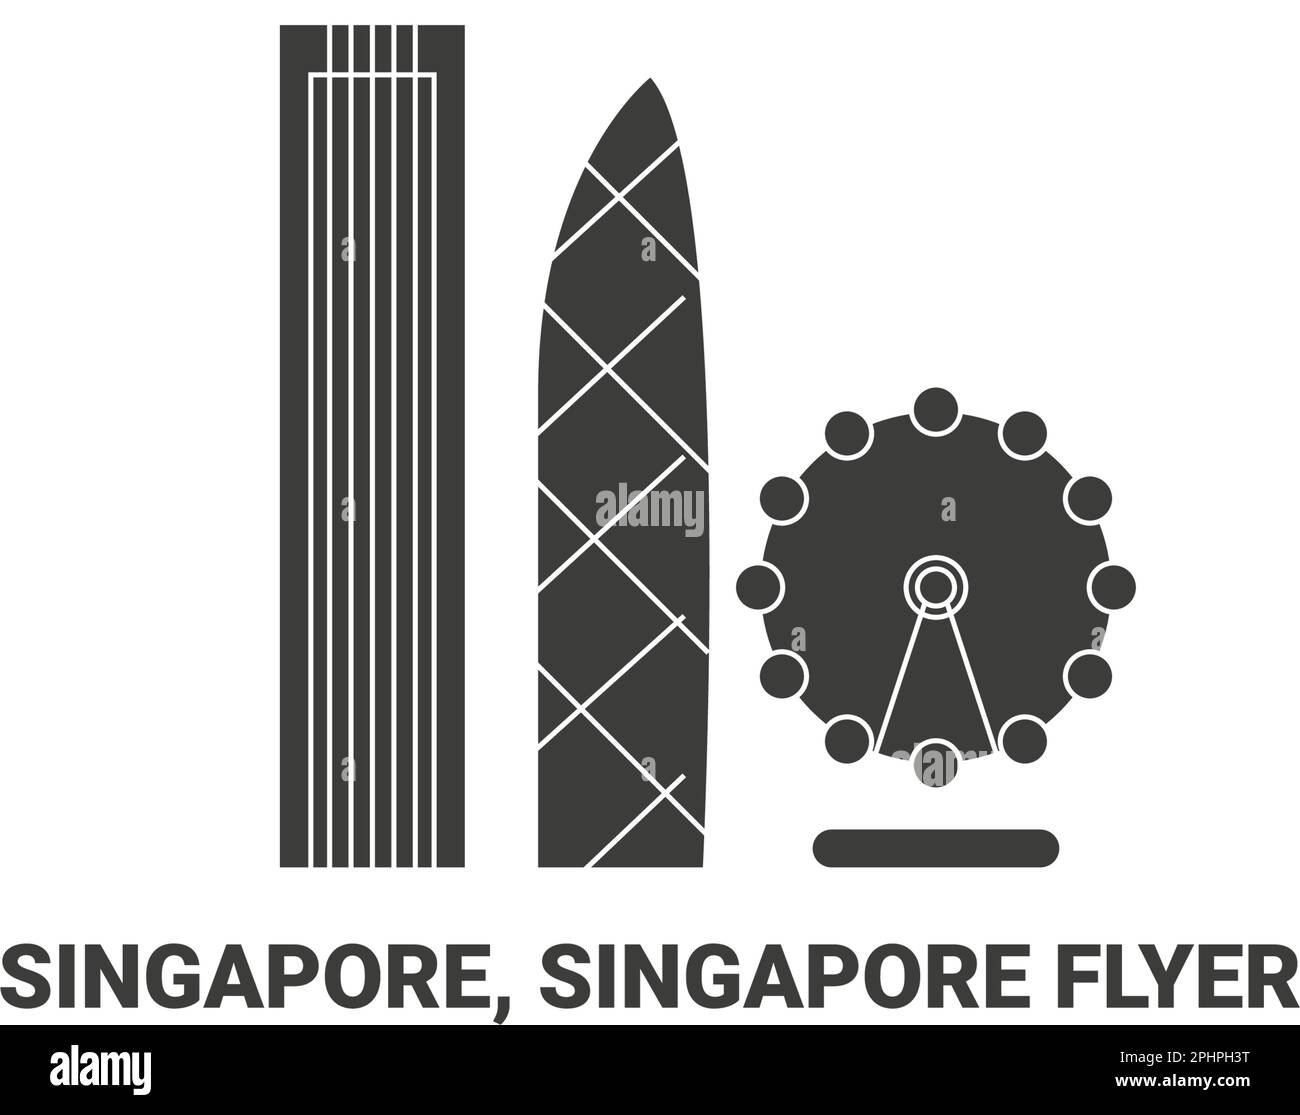 Singapur, Singapore Flyer, Reise-Wahrzeichen-Vektordarstellung Stock Vektor